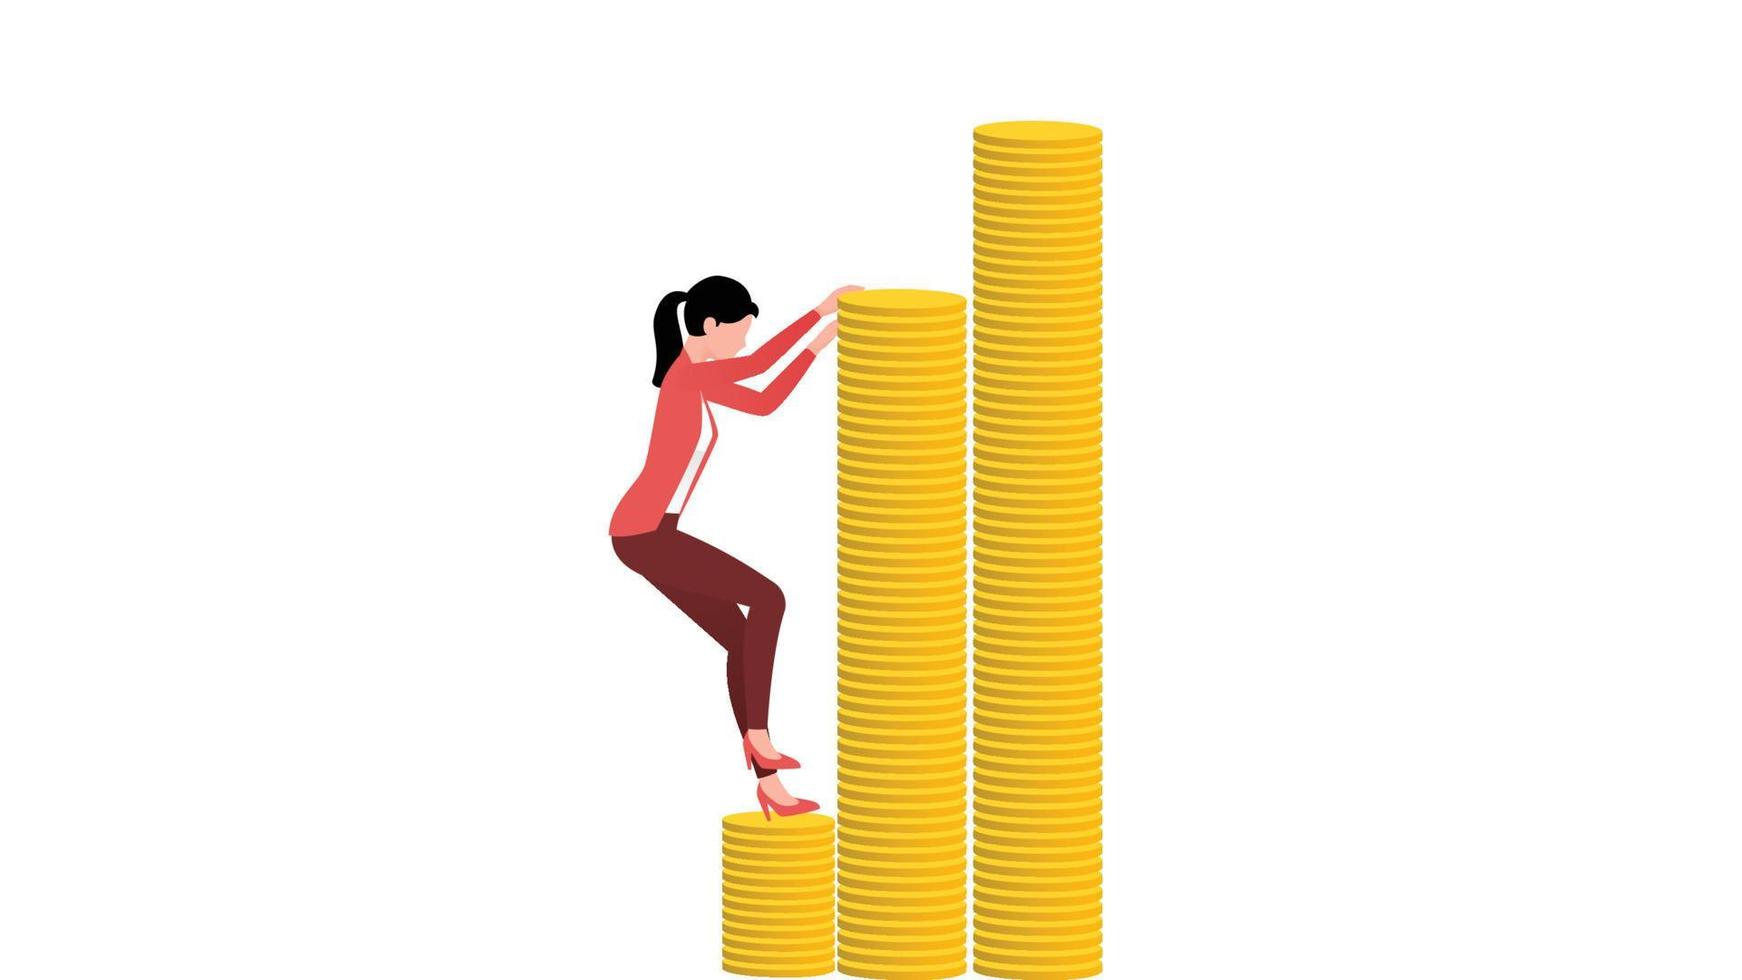 donna che si arrampica su una pila di monete, illustrazione vettoriale di carattere aziendale piatto su sfondo bianco.